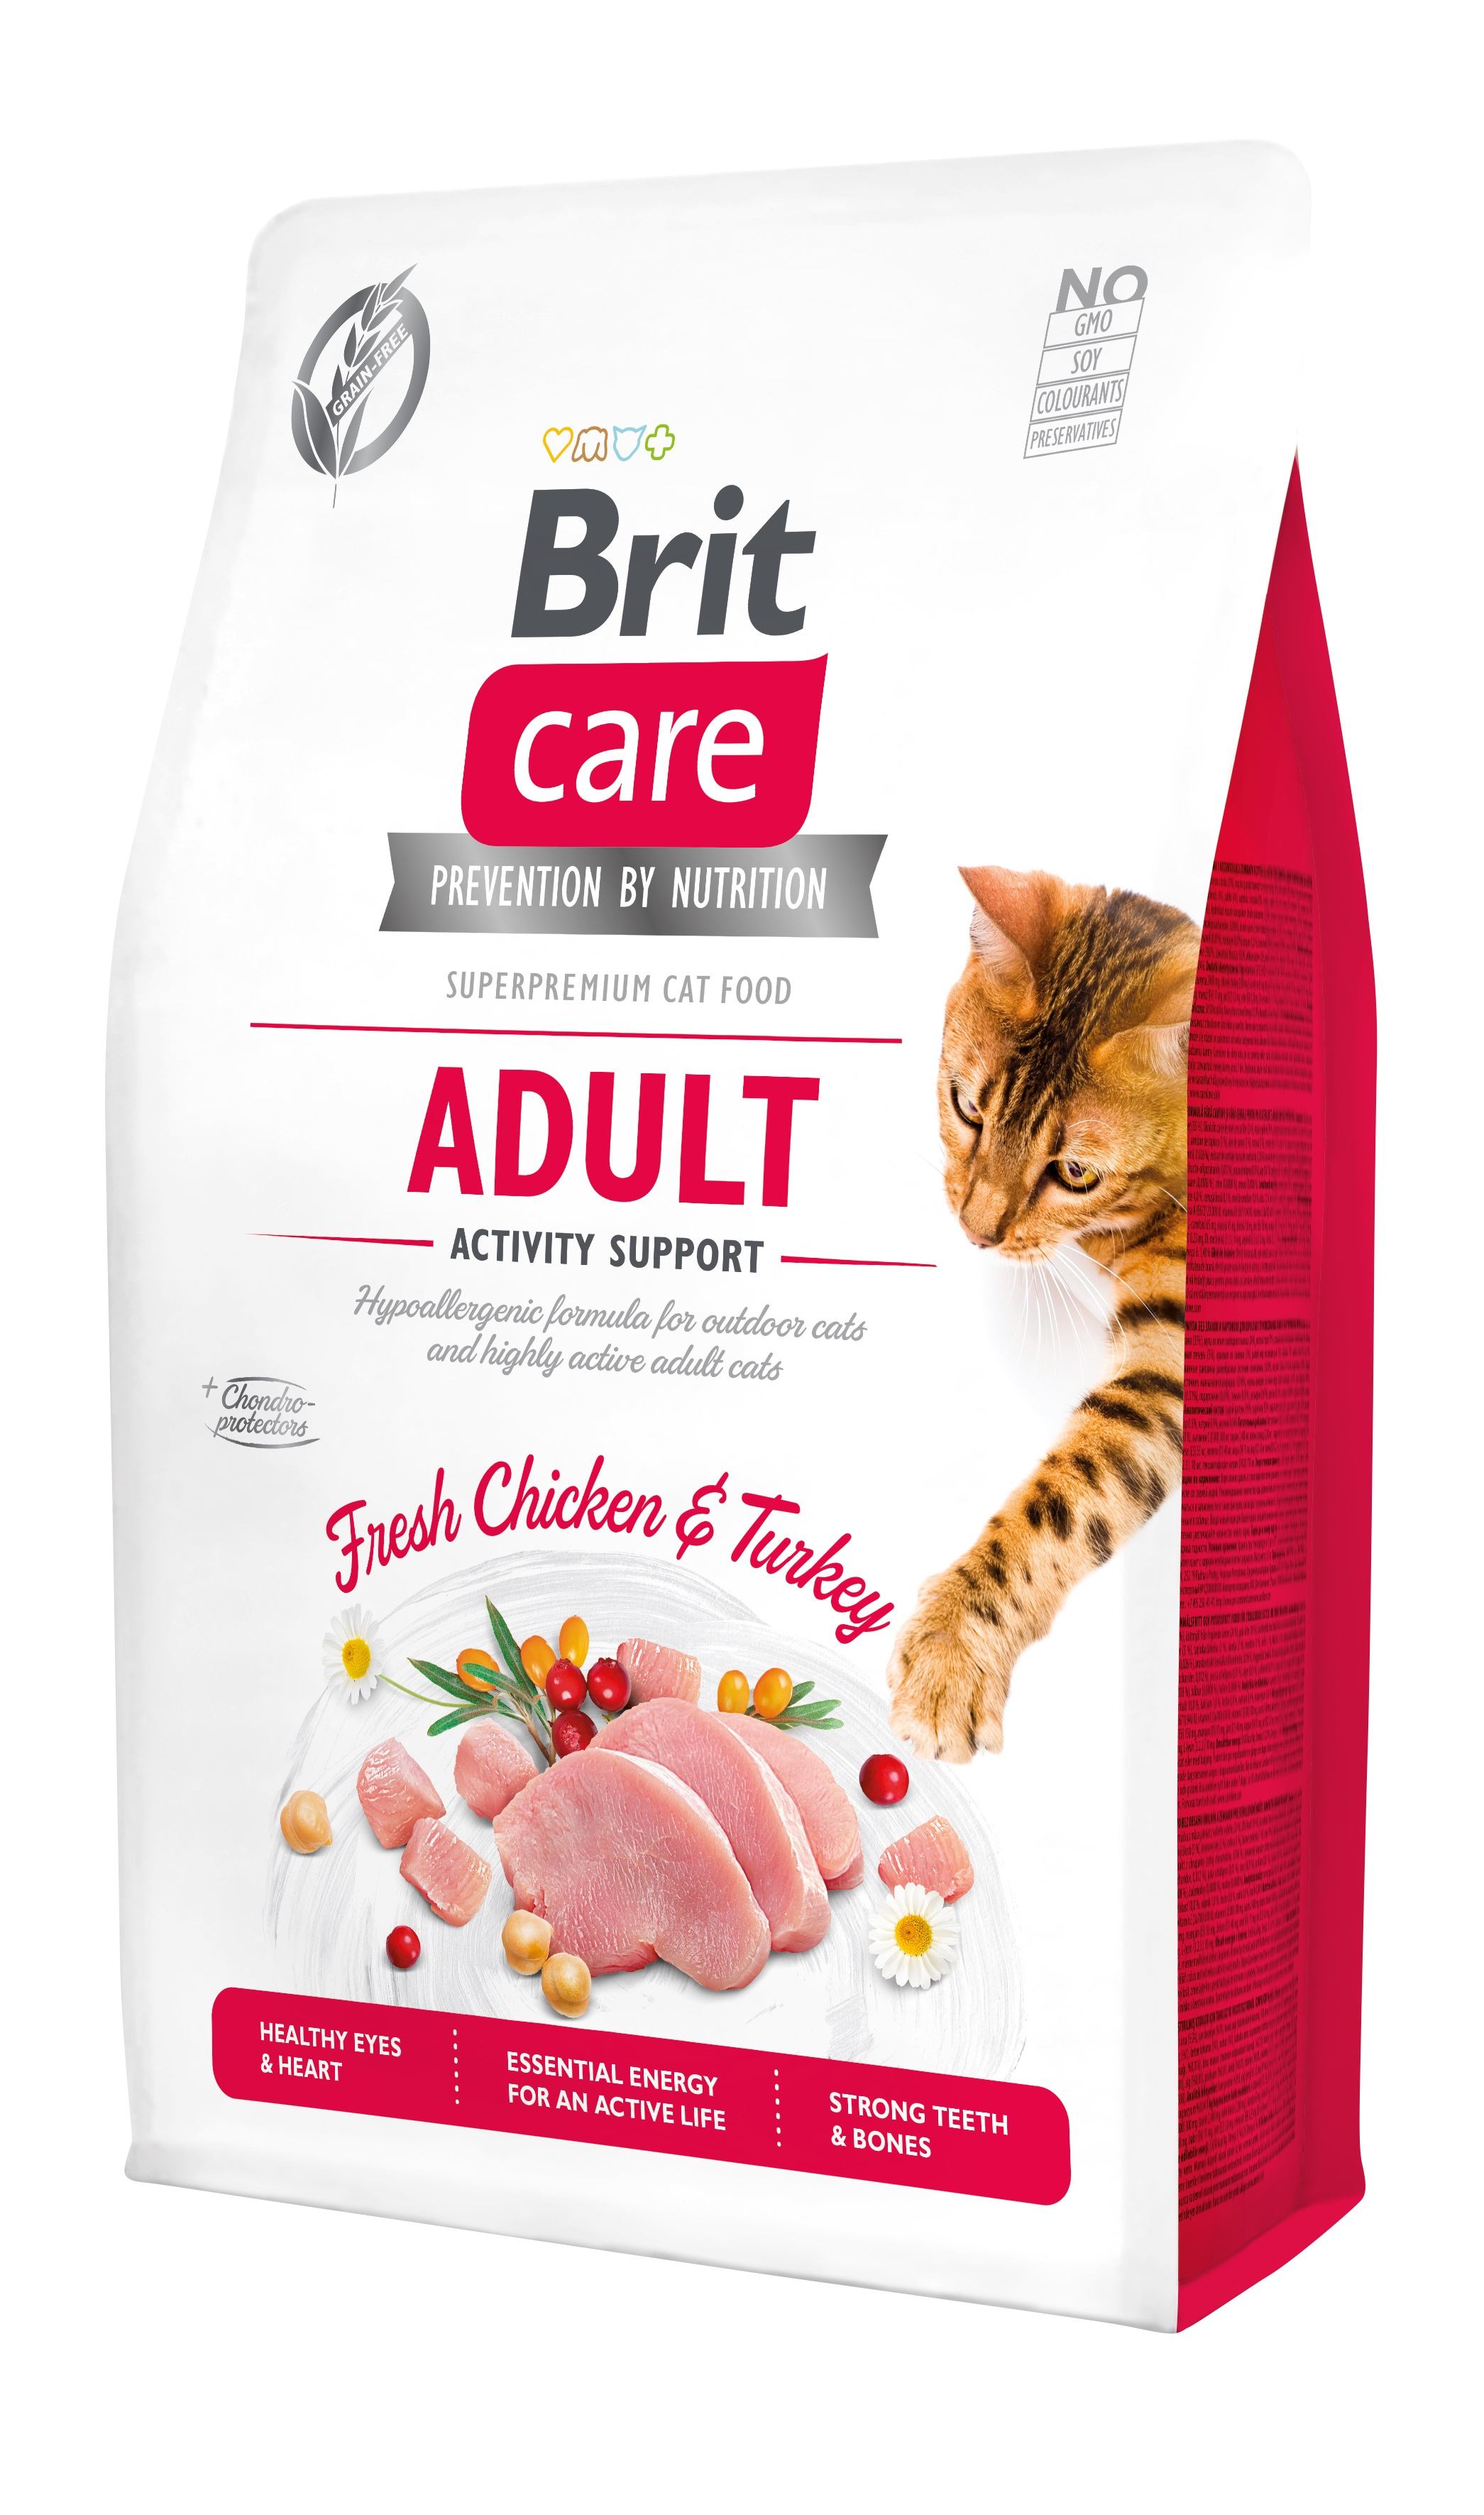 Беззерновой сухой корм для уличных и активных котов Brit Care Cat GF Adult Activity Support, со свежей курицей и индейкой, 2 кг - фото 1